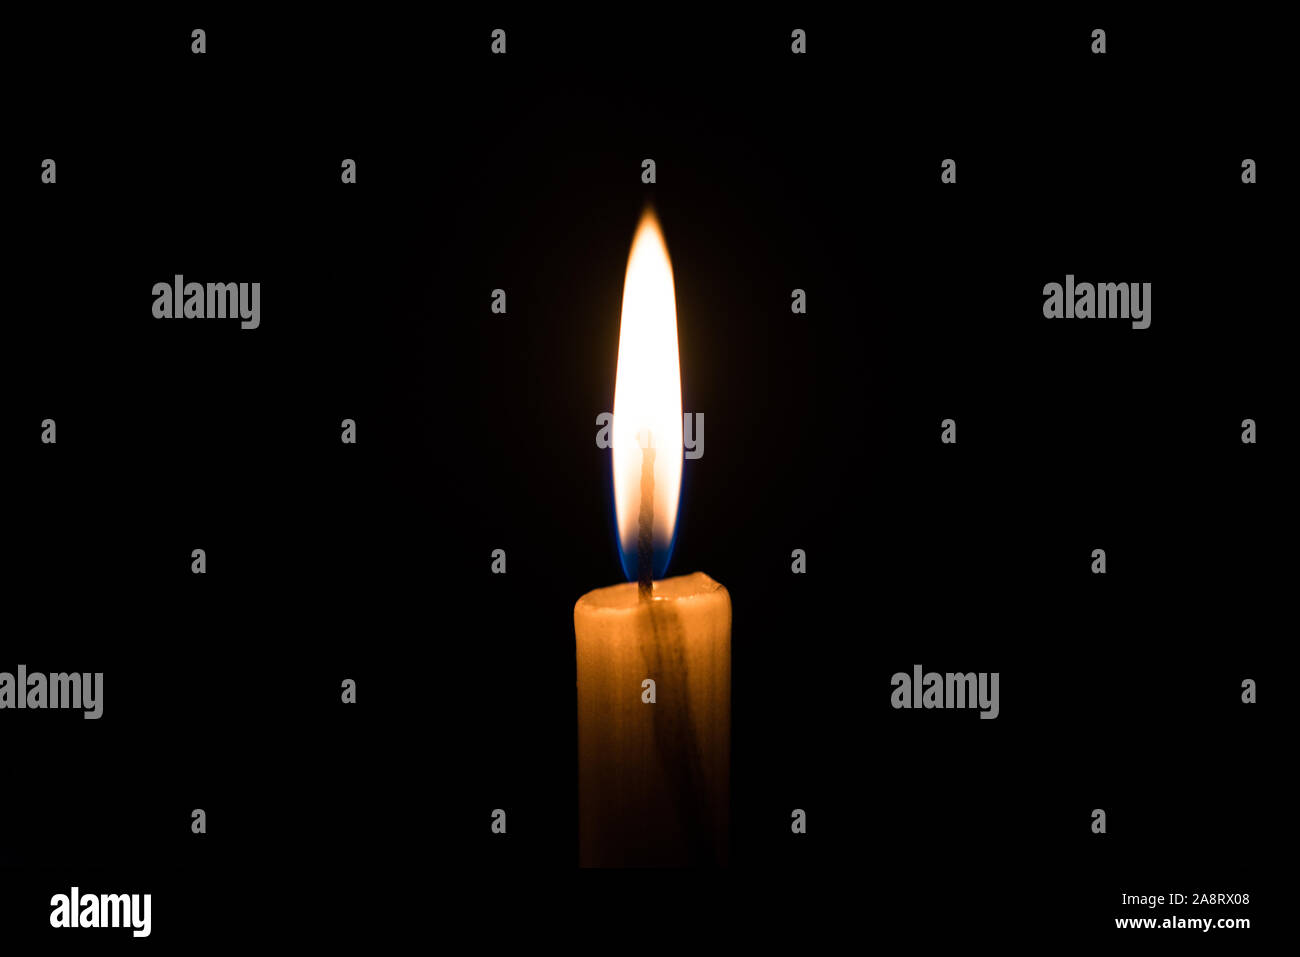 Kerze Flamme. Konzept der Erinnerung, Erinnerung, Trauer, Kummer und Leid  Stockfotografie - Alamy